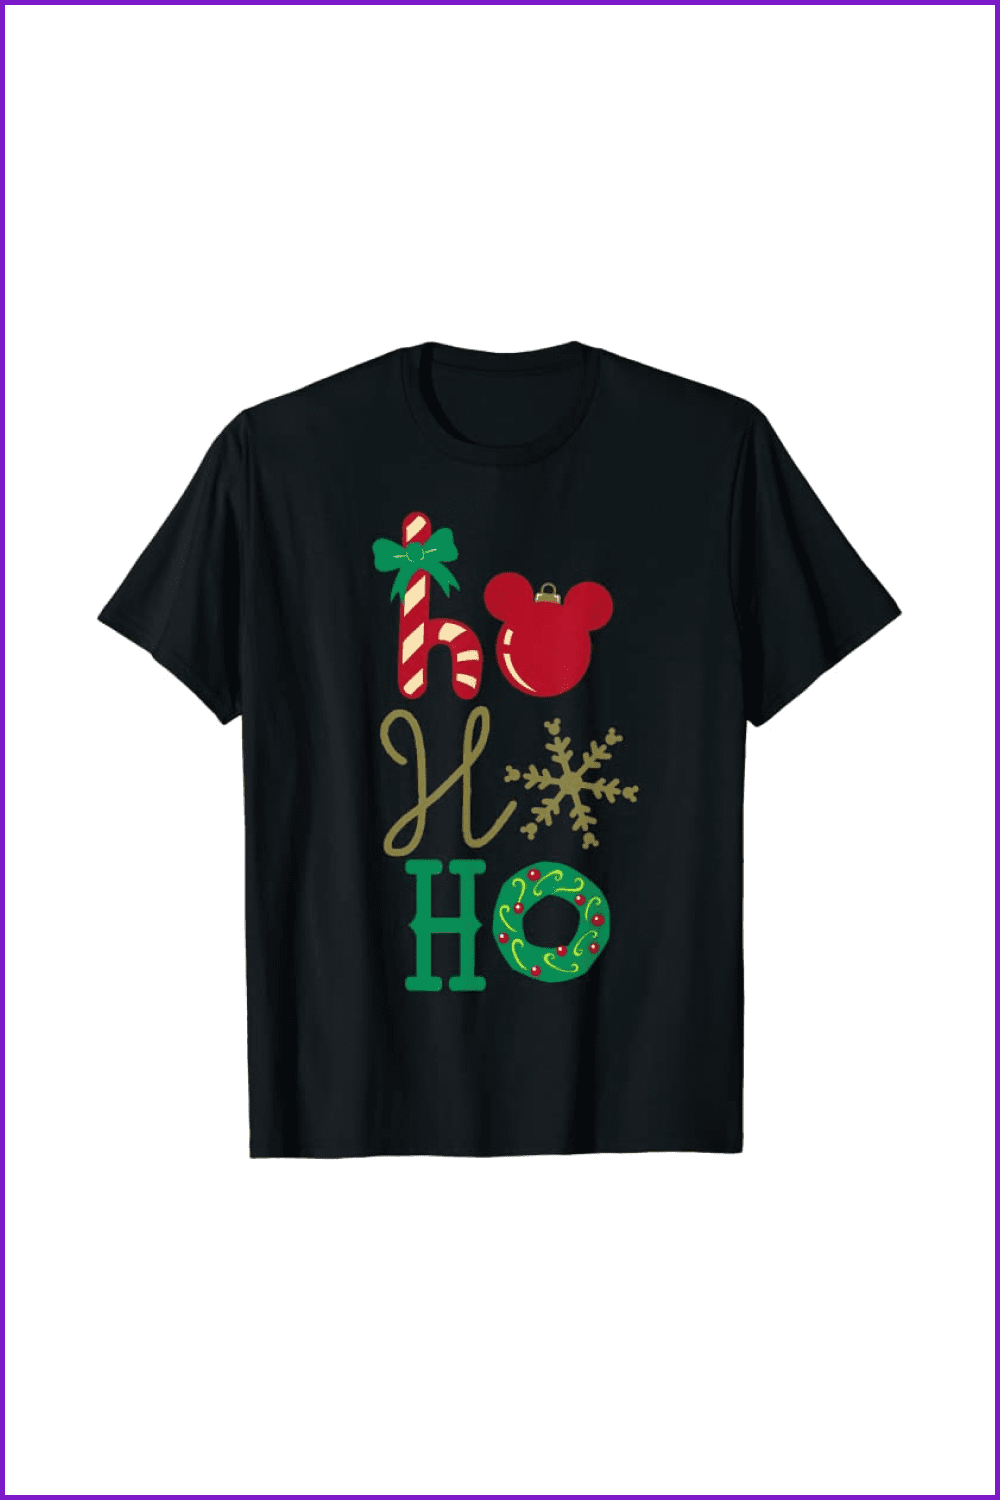 Black t-shirt with the words Ho-ho-ho.